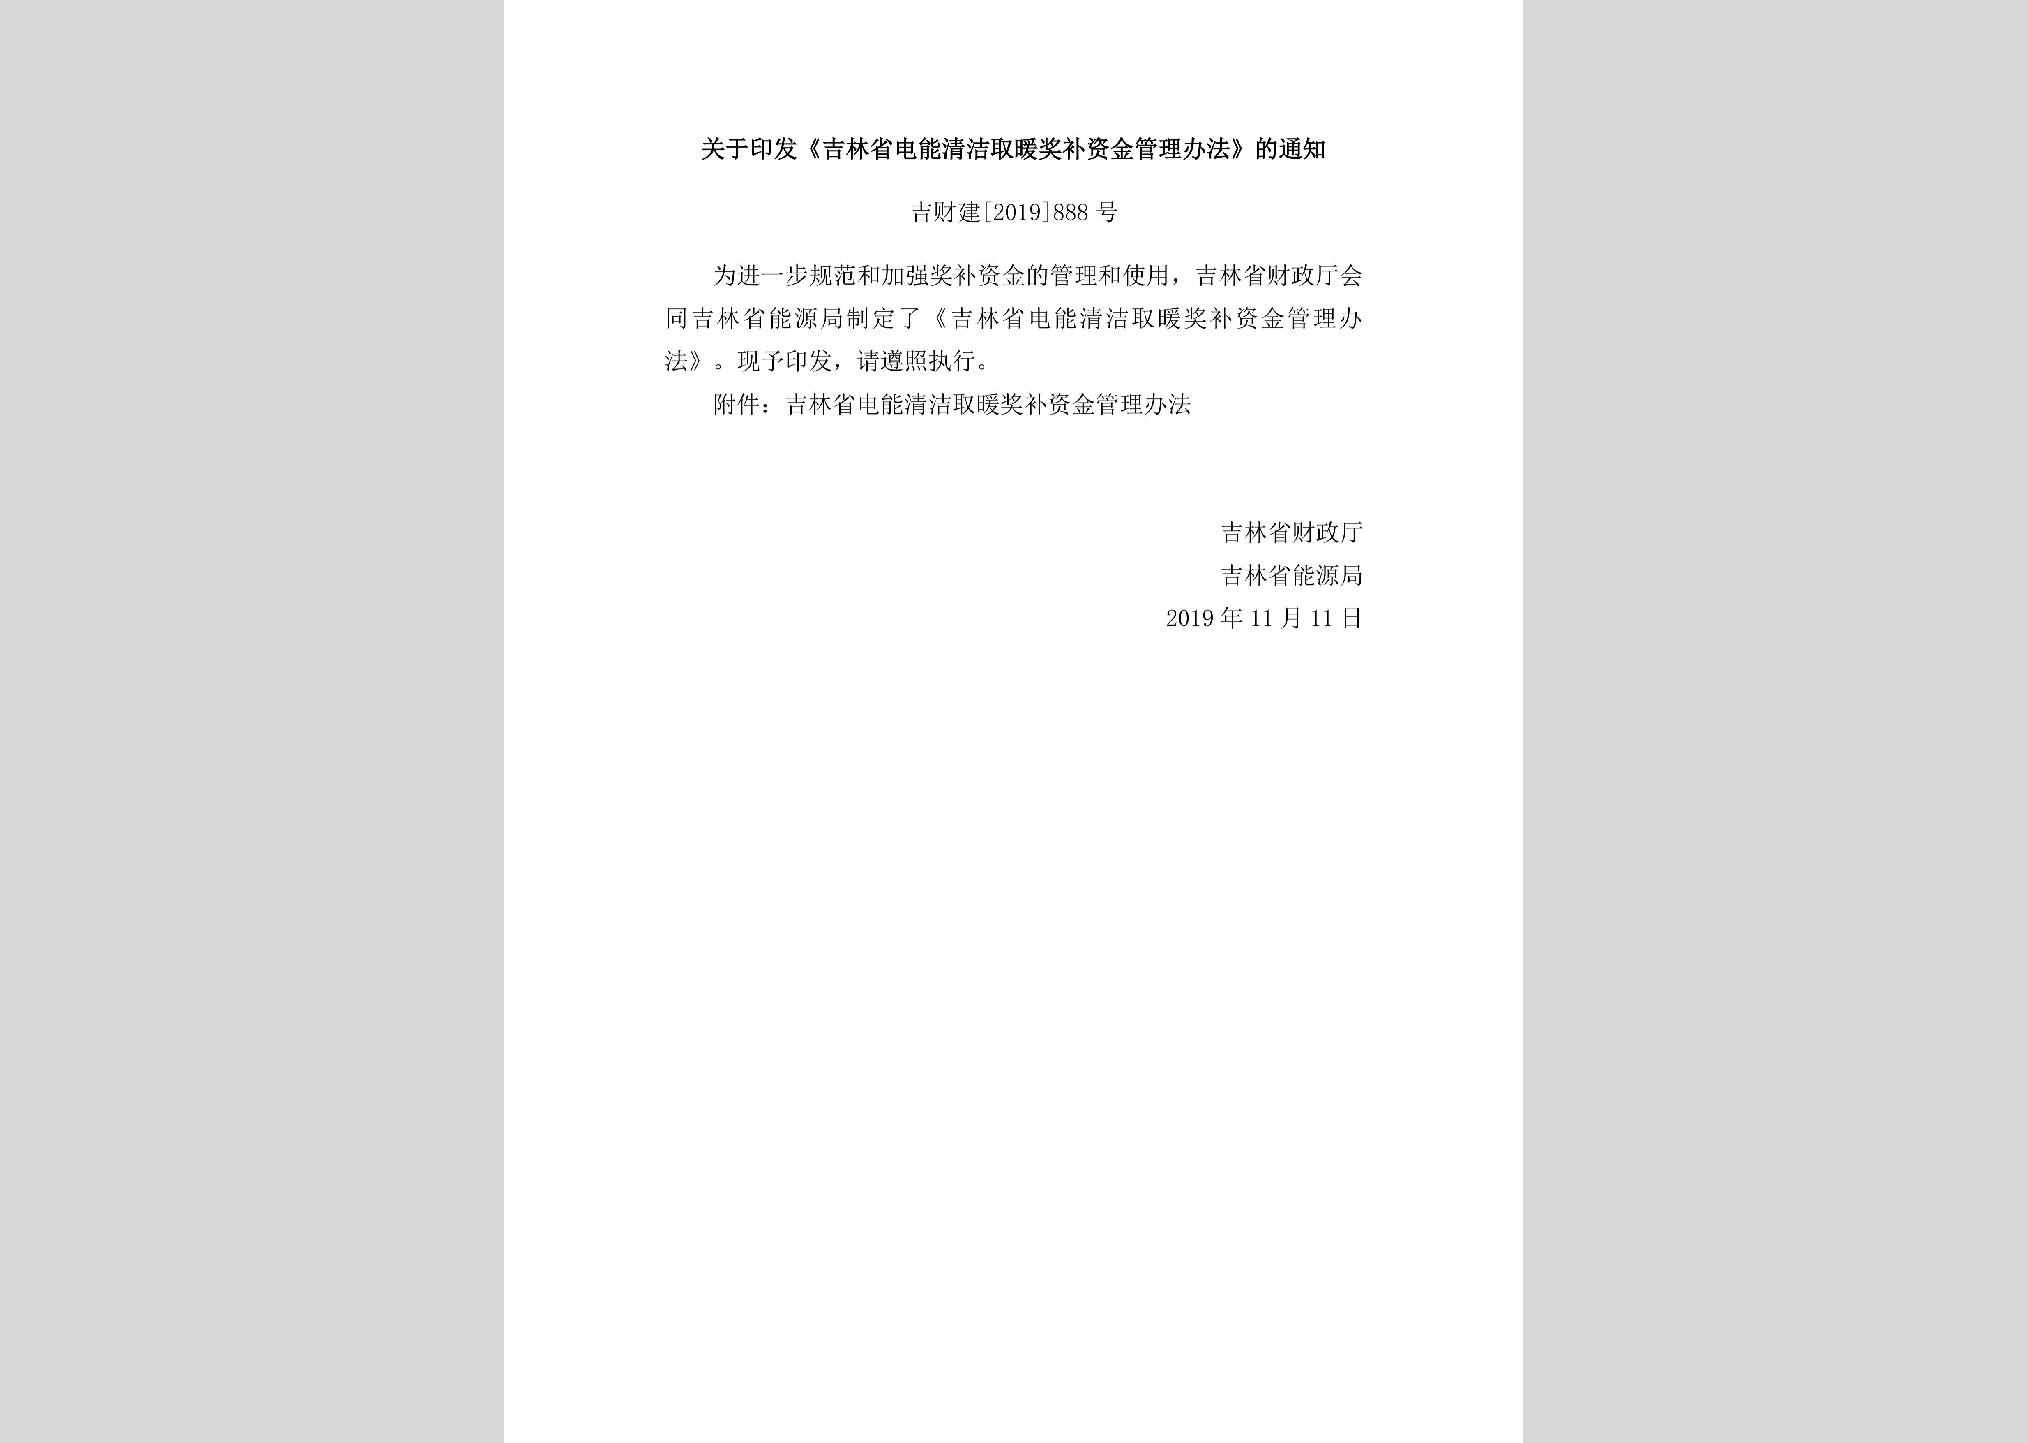 吉财建[2019]888号：《吉林省电能清洁取暖奖补资金管理办法》